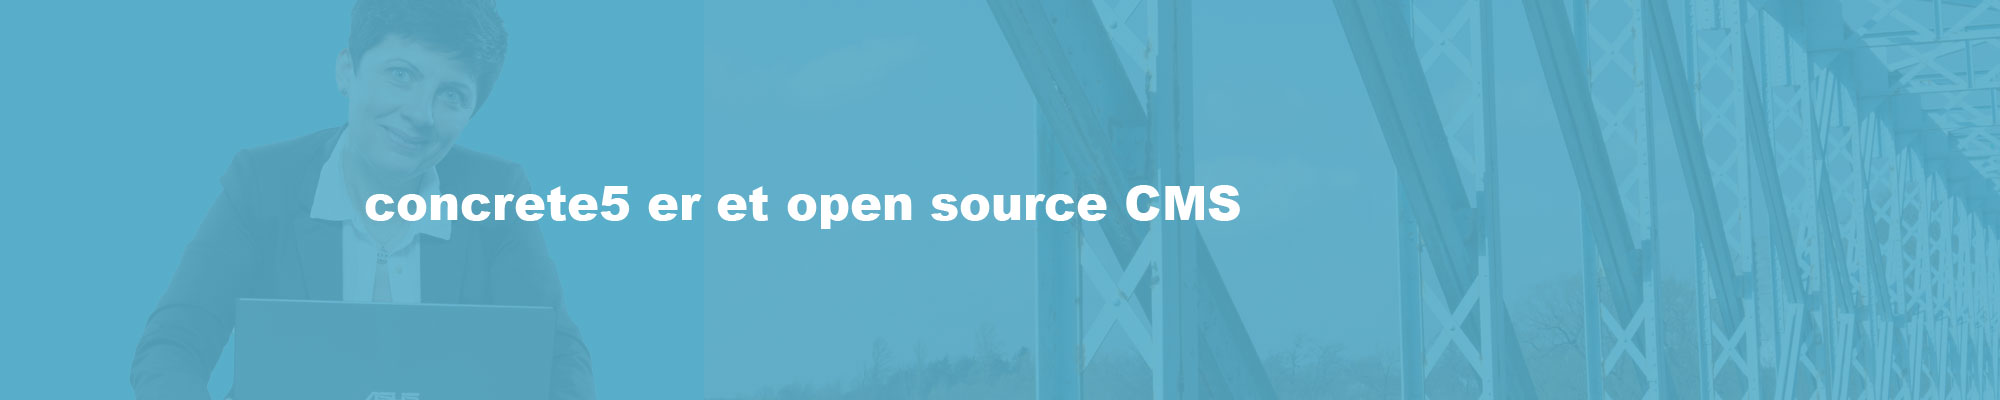 Concrete5 er et open source cms